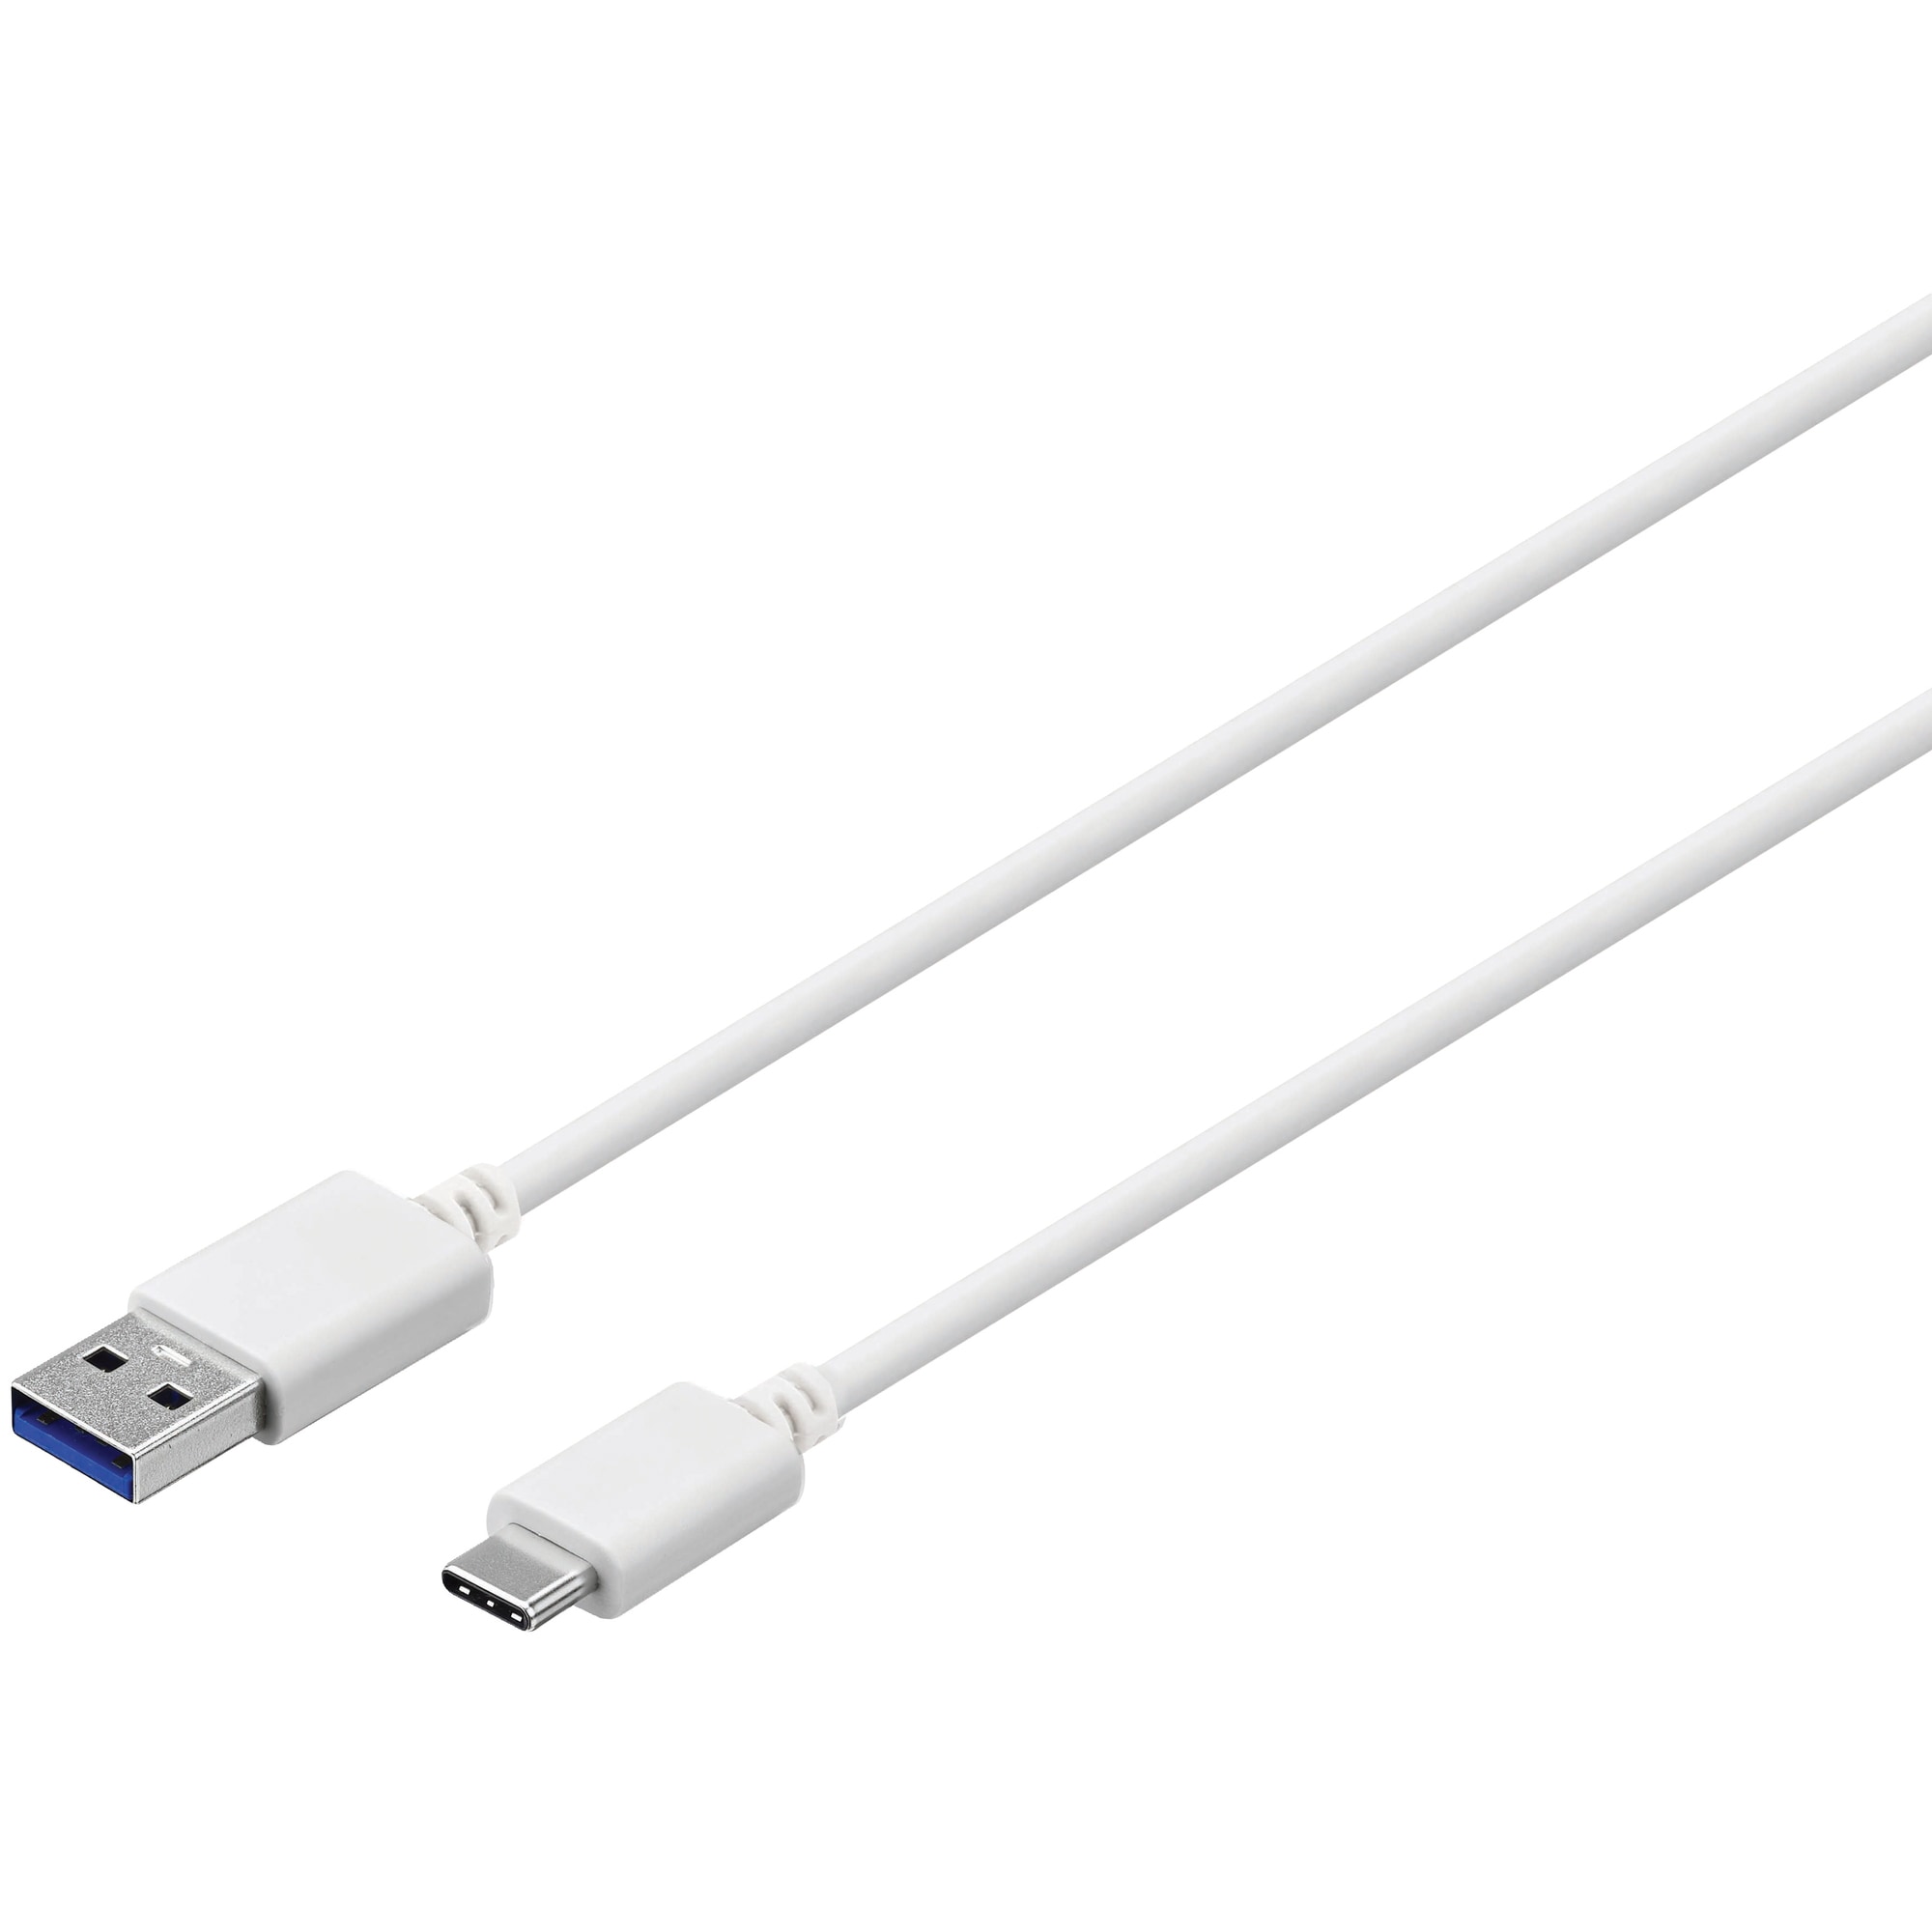 Sandstrøm USB-A - USB-C kaapeli 3 m (valkoinen) - Gigantti verkkokauppa